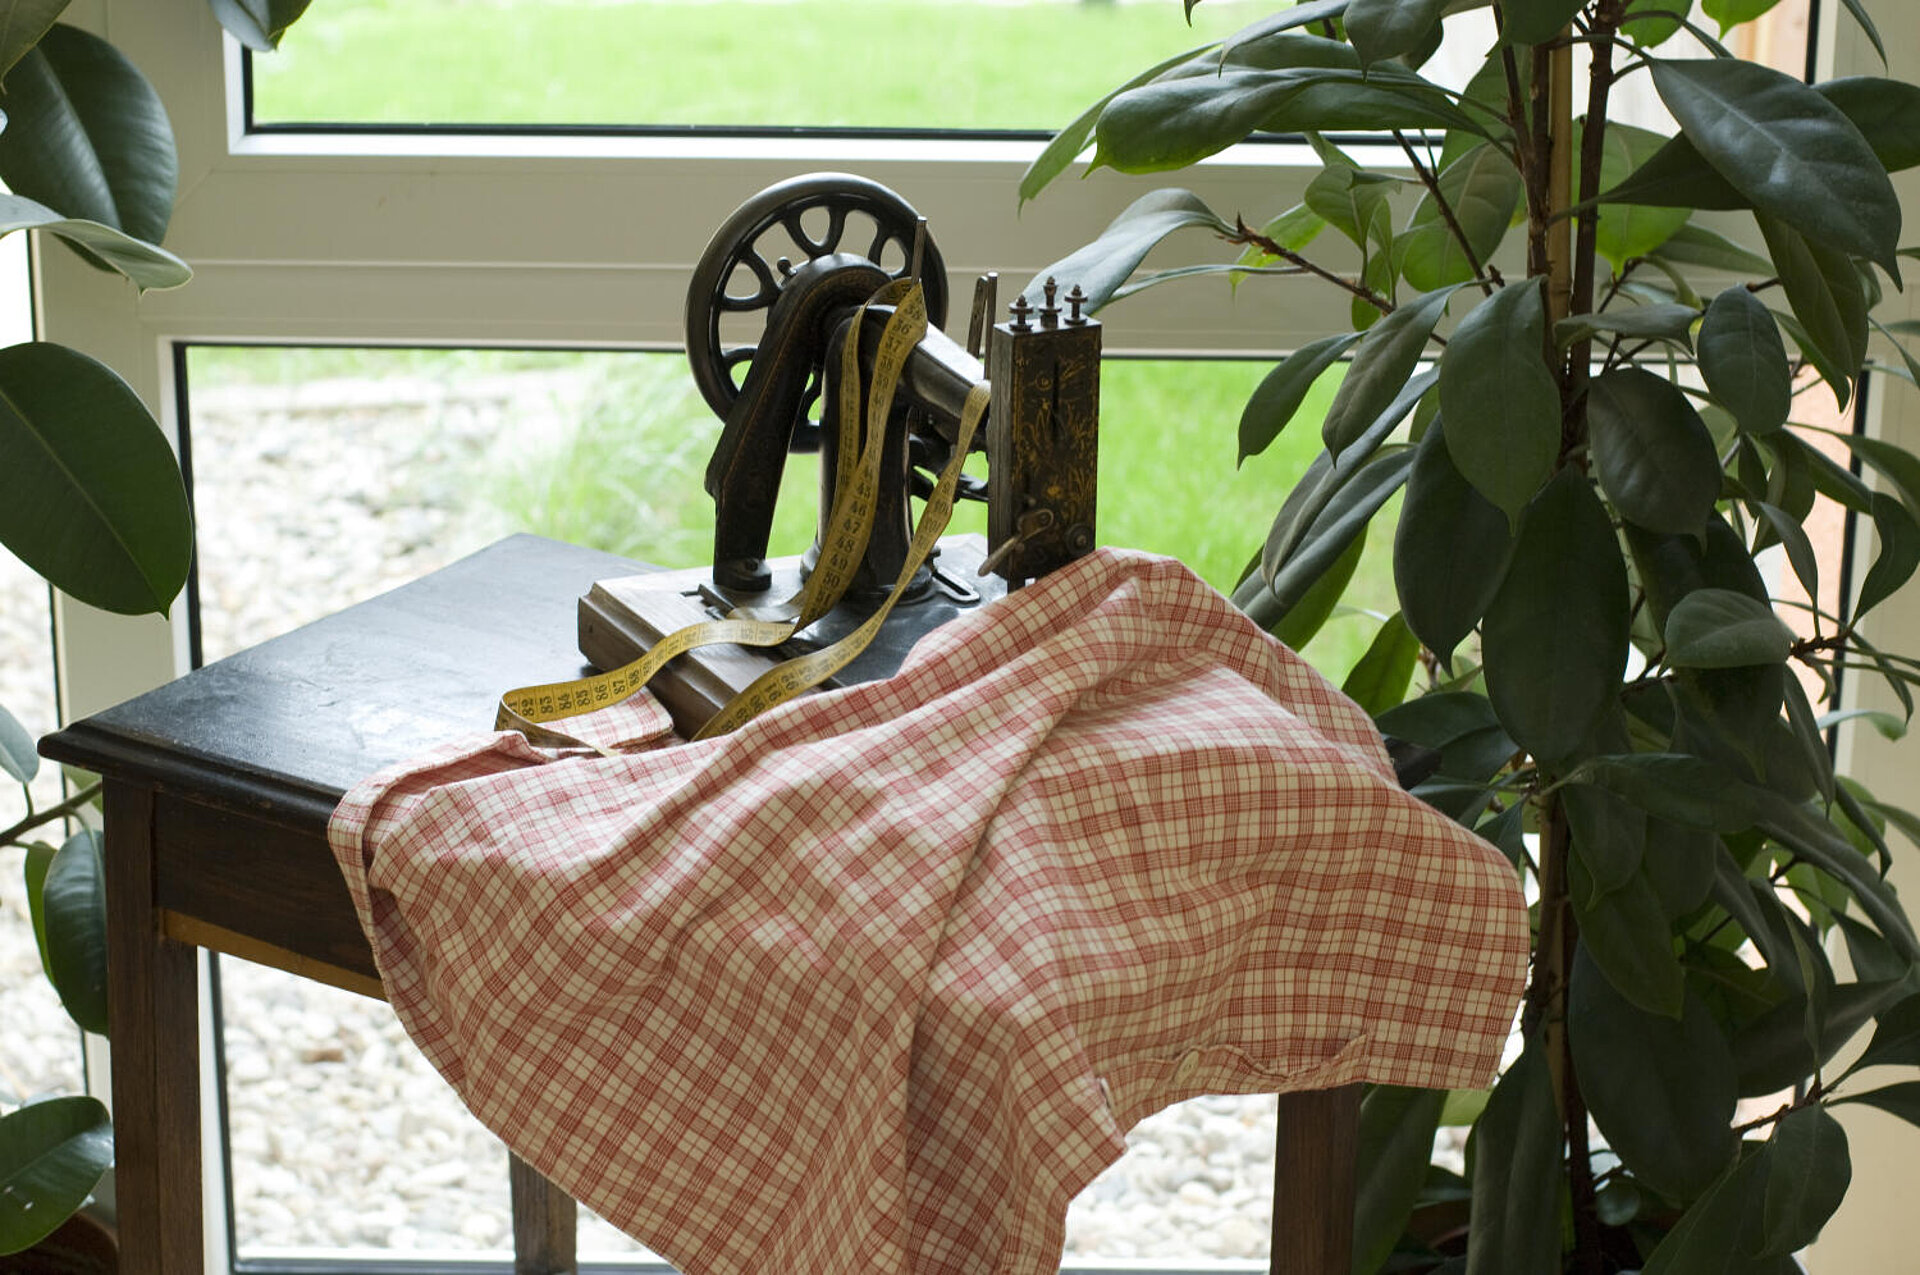 Vor einem Fenster steht ein dunkelbraunes Tischchen, eingerahmt von zwei Grünpflanzen. Auf dem Tisch eine "altmodische" Nähmaschine, die zur Häfte von einem rotkariertem Tuch bedeckt ist. Zusätzlich hängt dort ein ausgerolltes, elastisches Zentimetermaß.